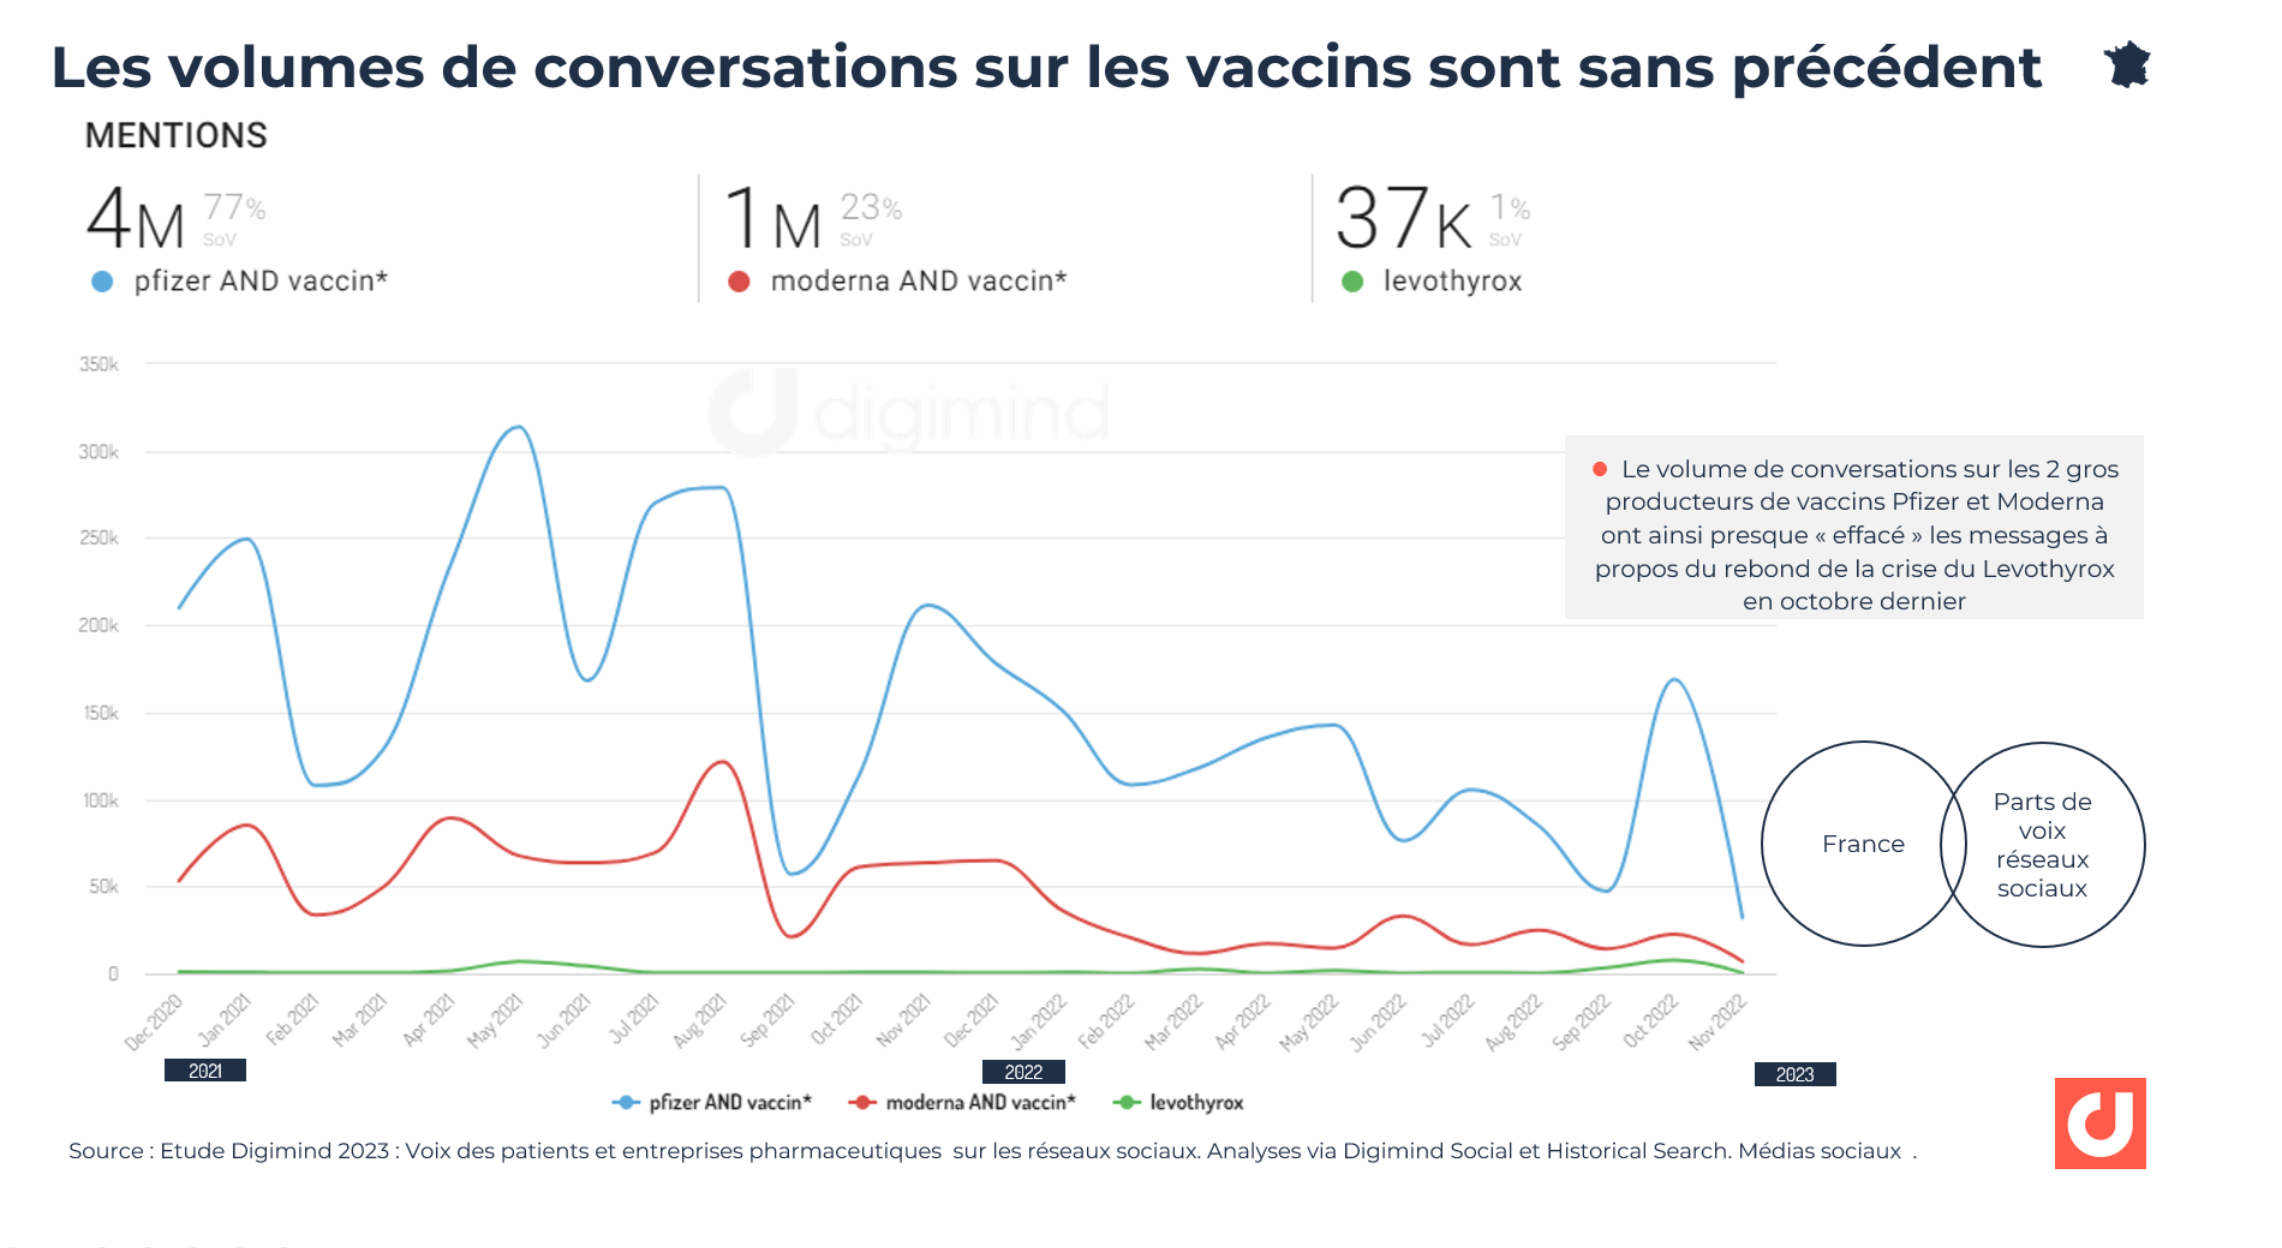 Les volumes de conversations sur les vaccins sont sans précédent